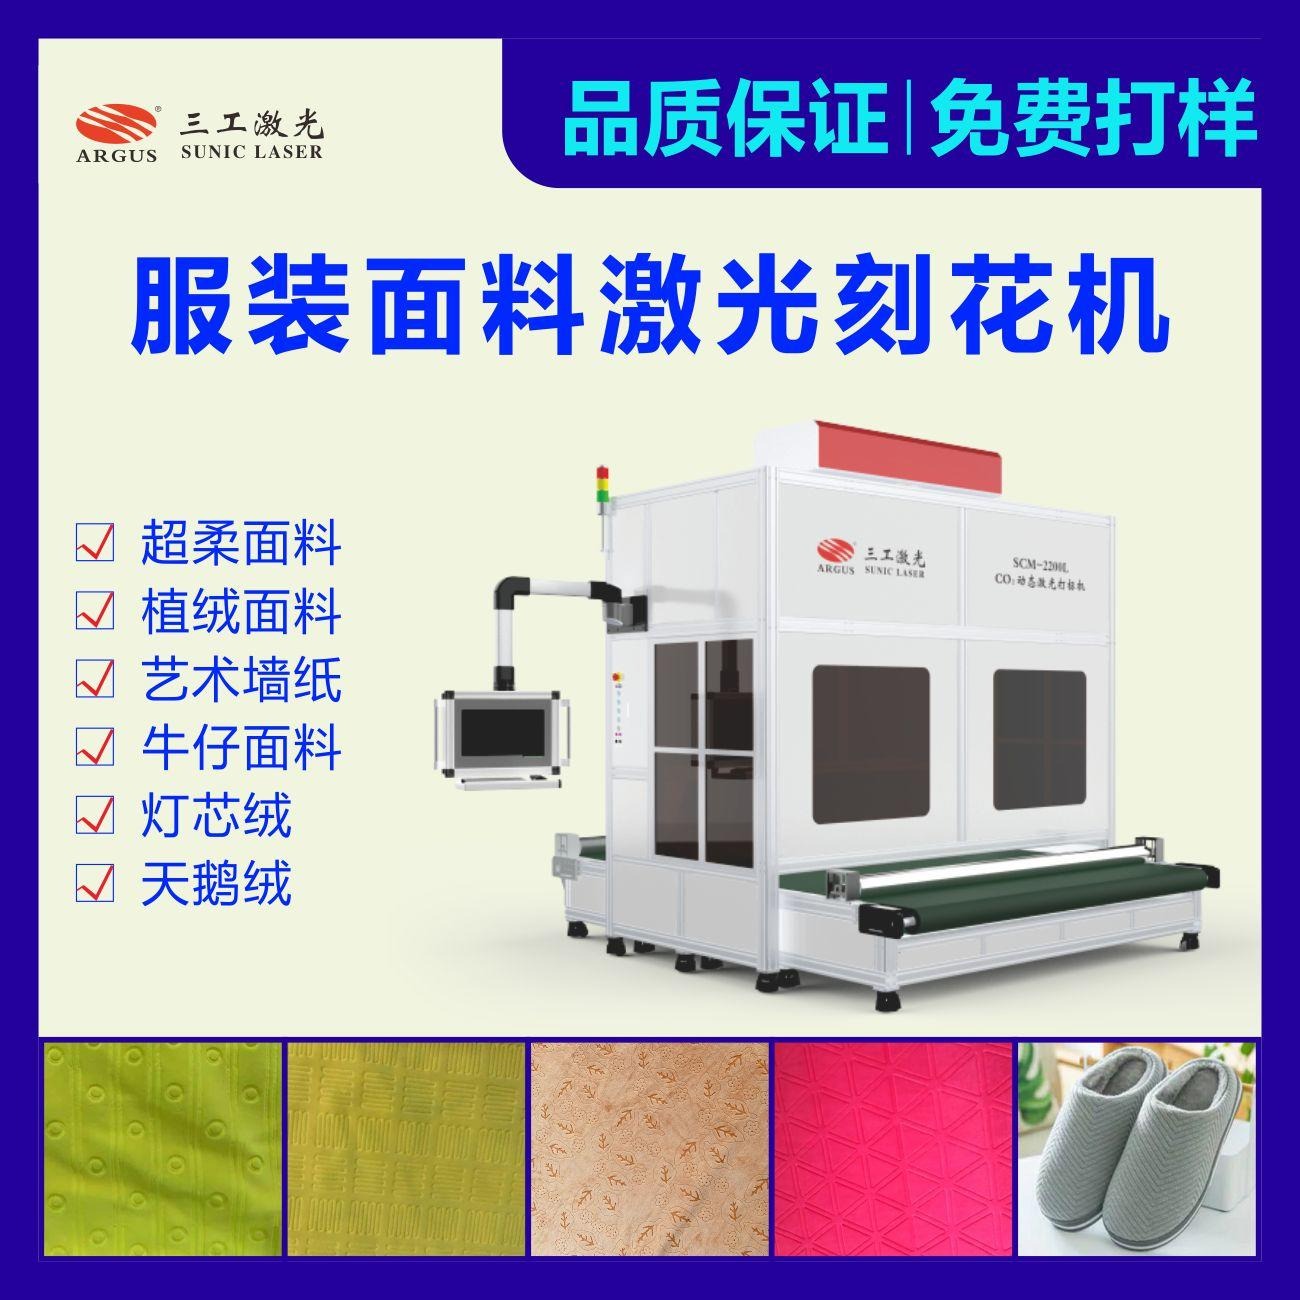 武汉三工激光布料激光印花机 纺织面料激光刻花机 激光打标机厂家图片